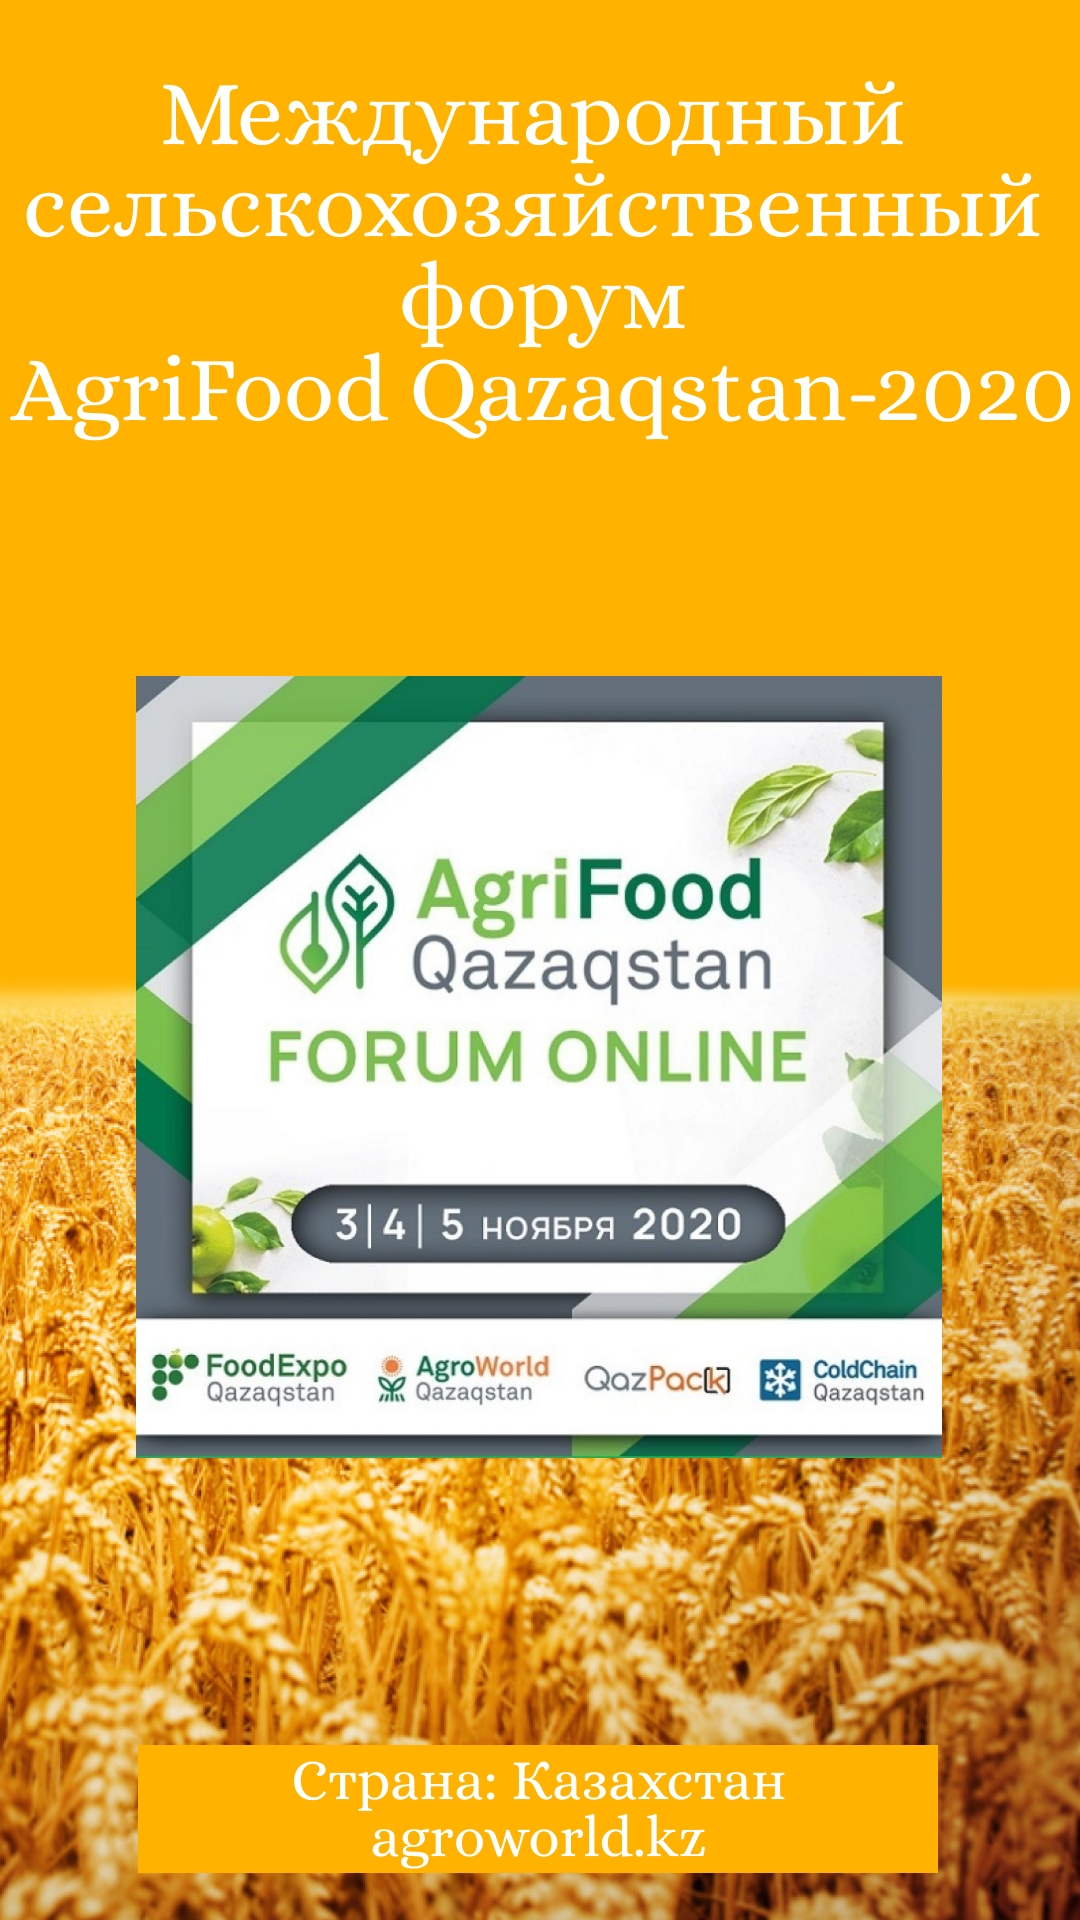 AgriFood Qazaqstan Online Forum 